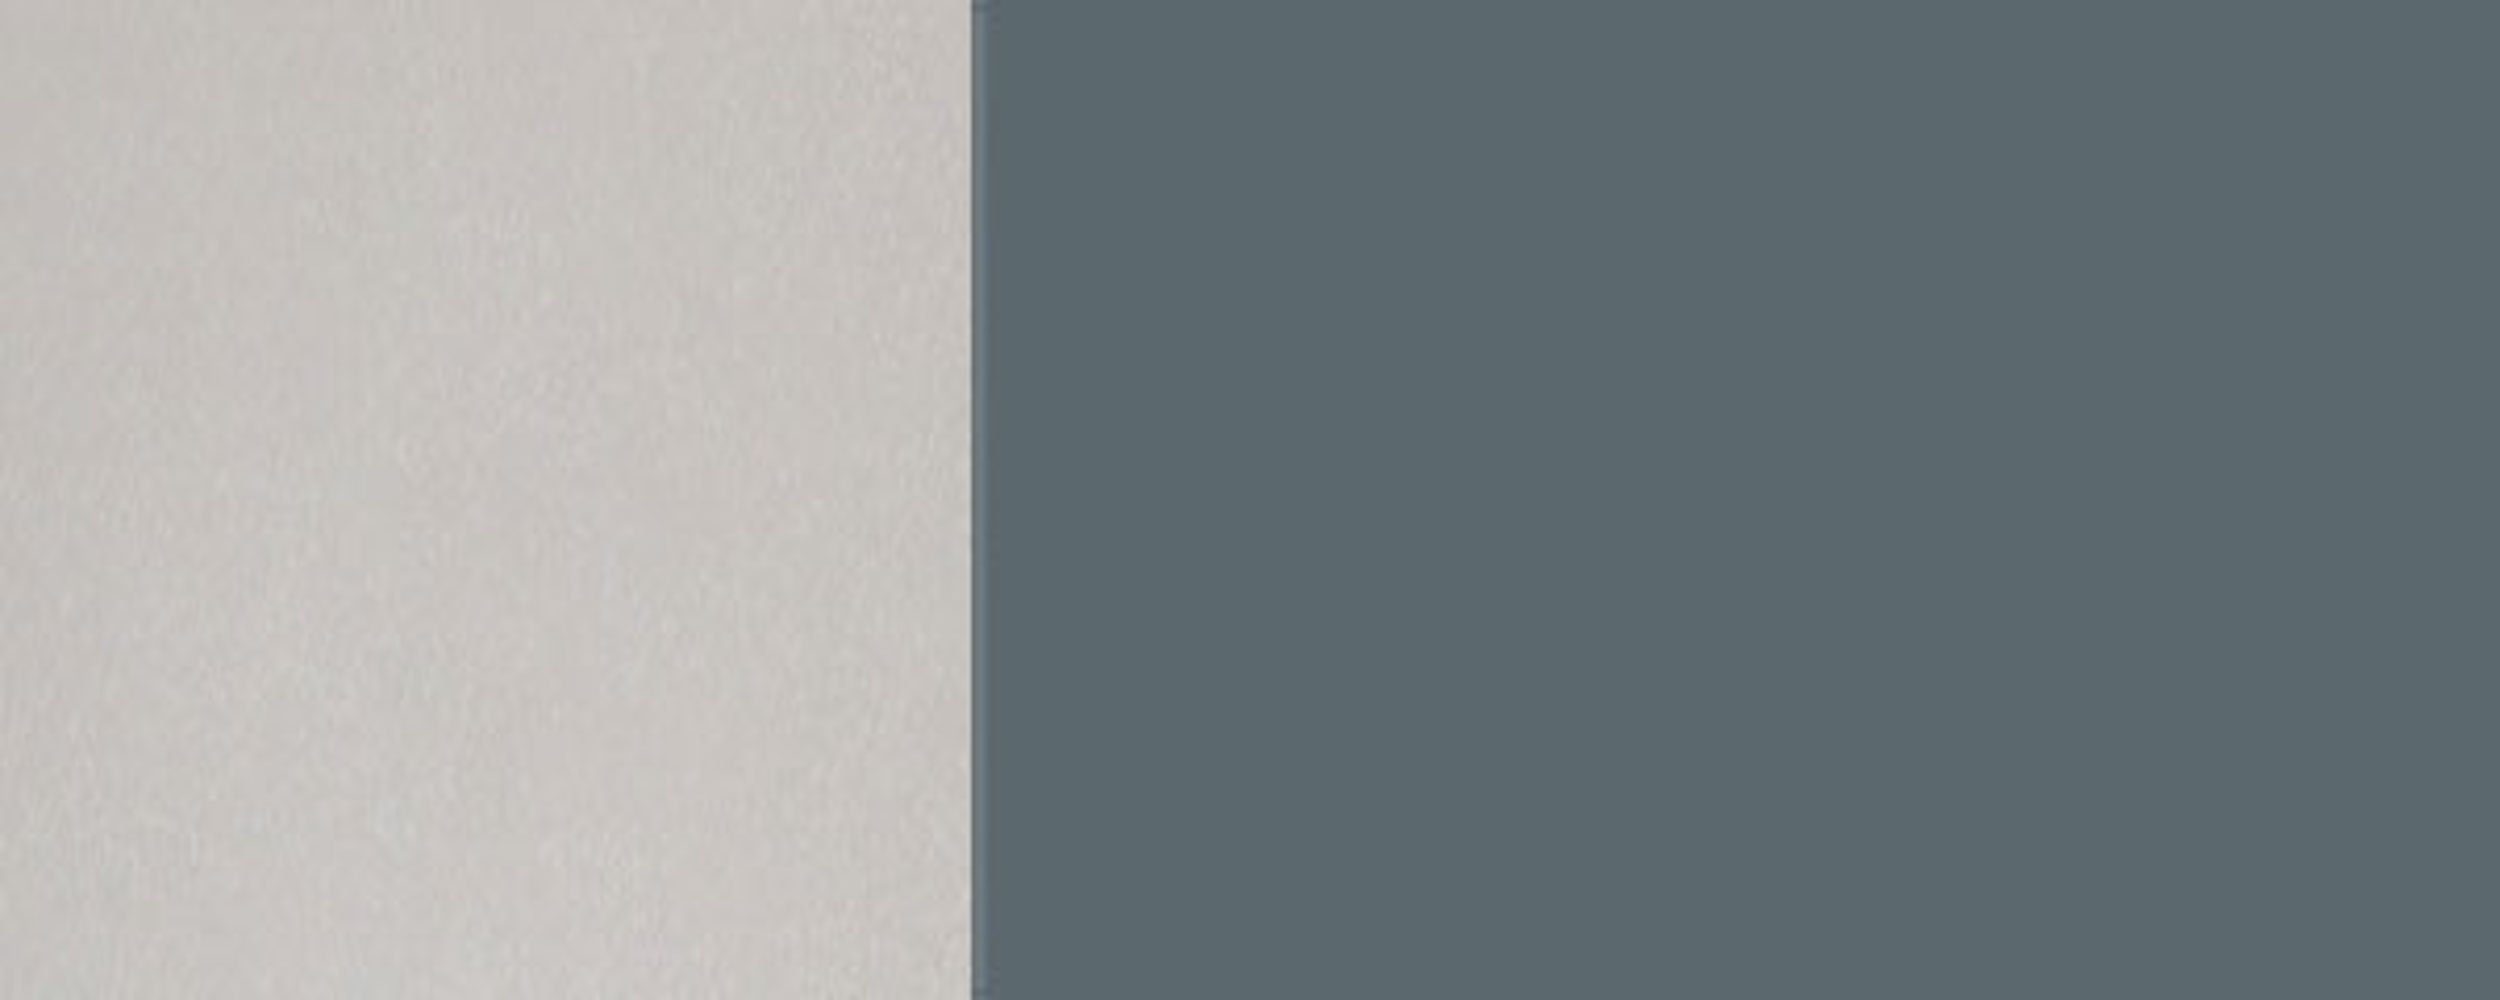 Klapphängeschrank (Florence) blaugrau 1-türig und wählbar RAL Feldmann-Wohnen Front- 7031 Korpusfarbe grifflos Klapptür Hochglanz Florence 60cm